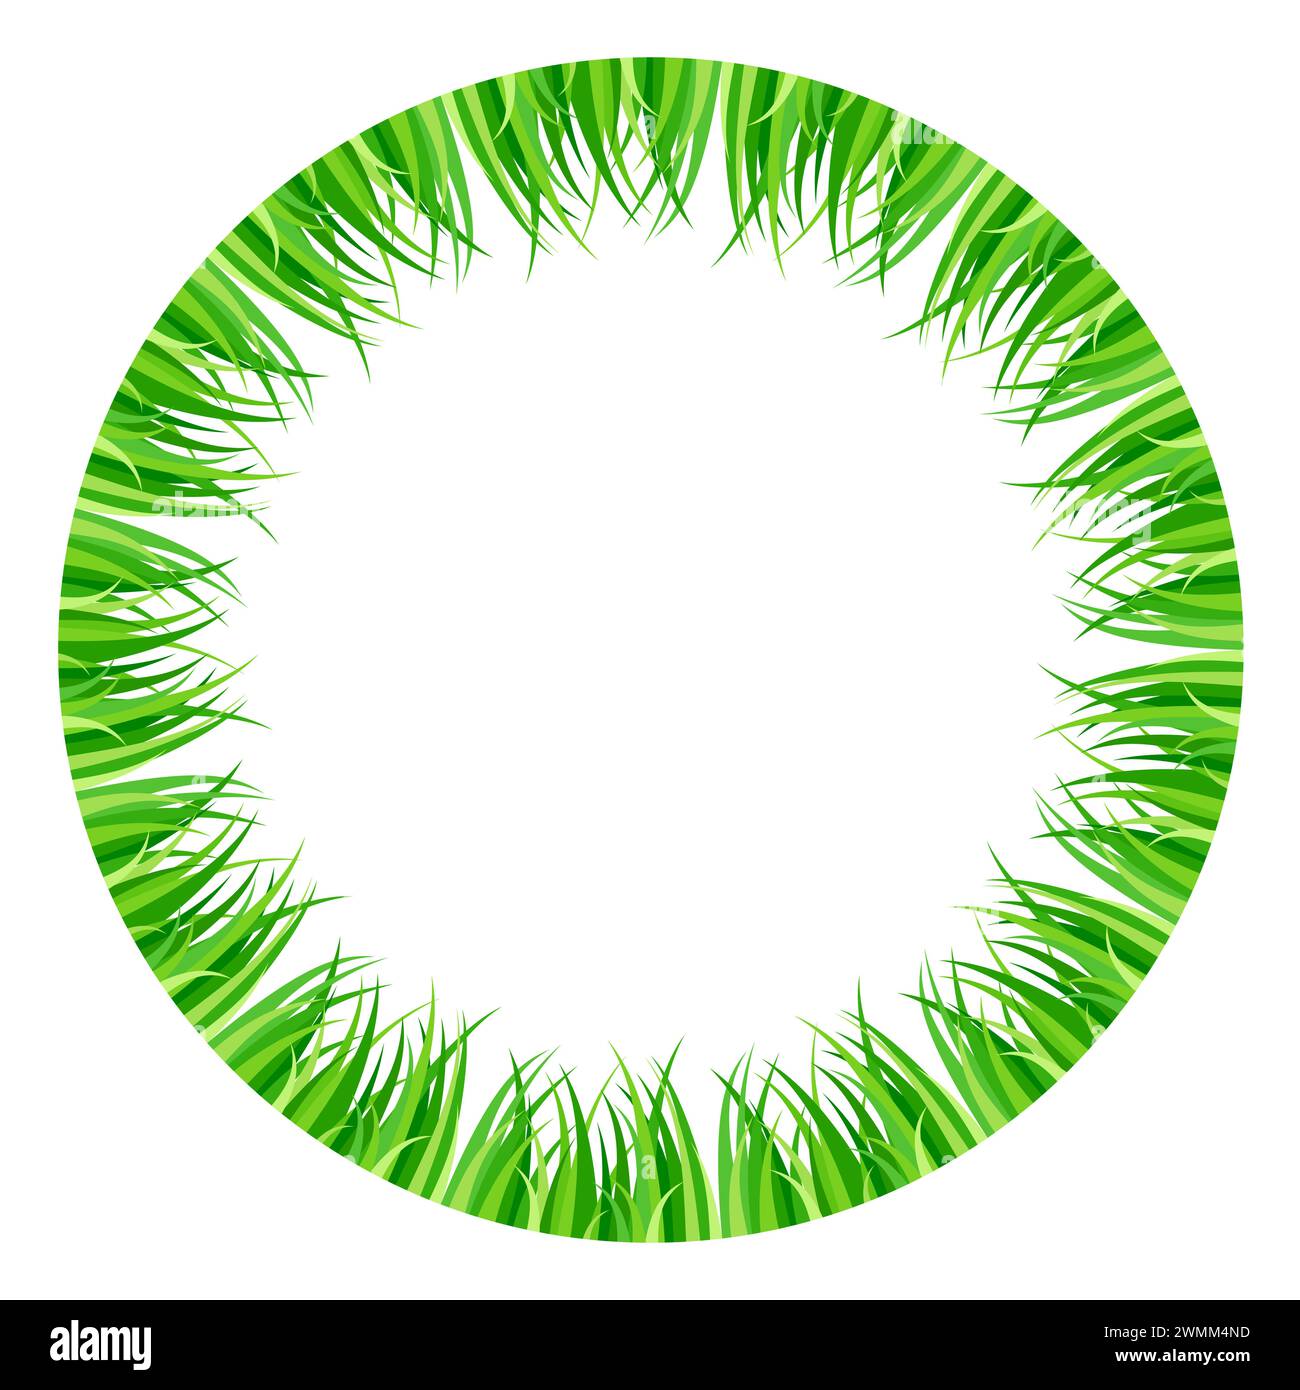 Erba verde disposta all'interno di un cerchio. Cornice circolare colorata, sfondo e bordo circolare decorativo, realizzati con fresche lame d'erba. Foto Stock